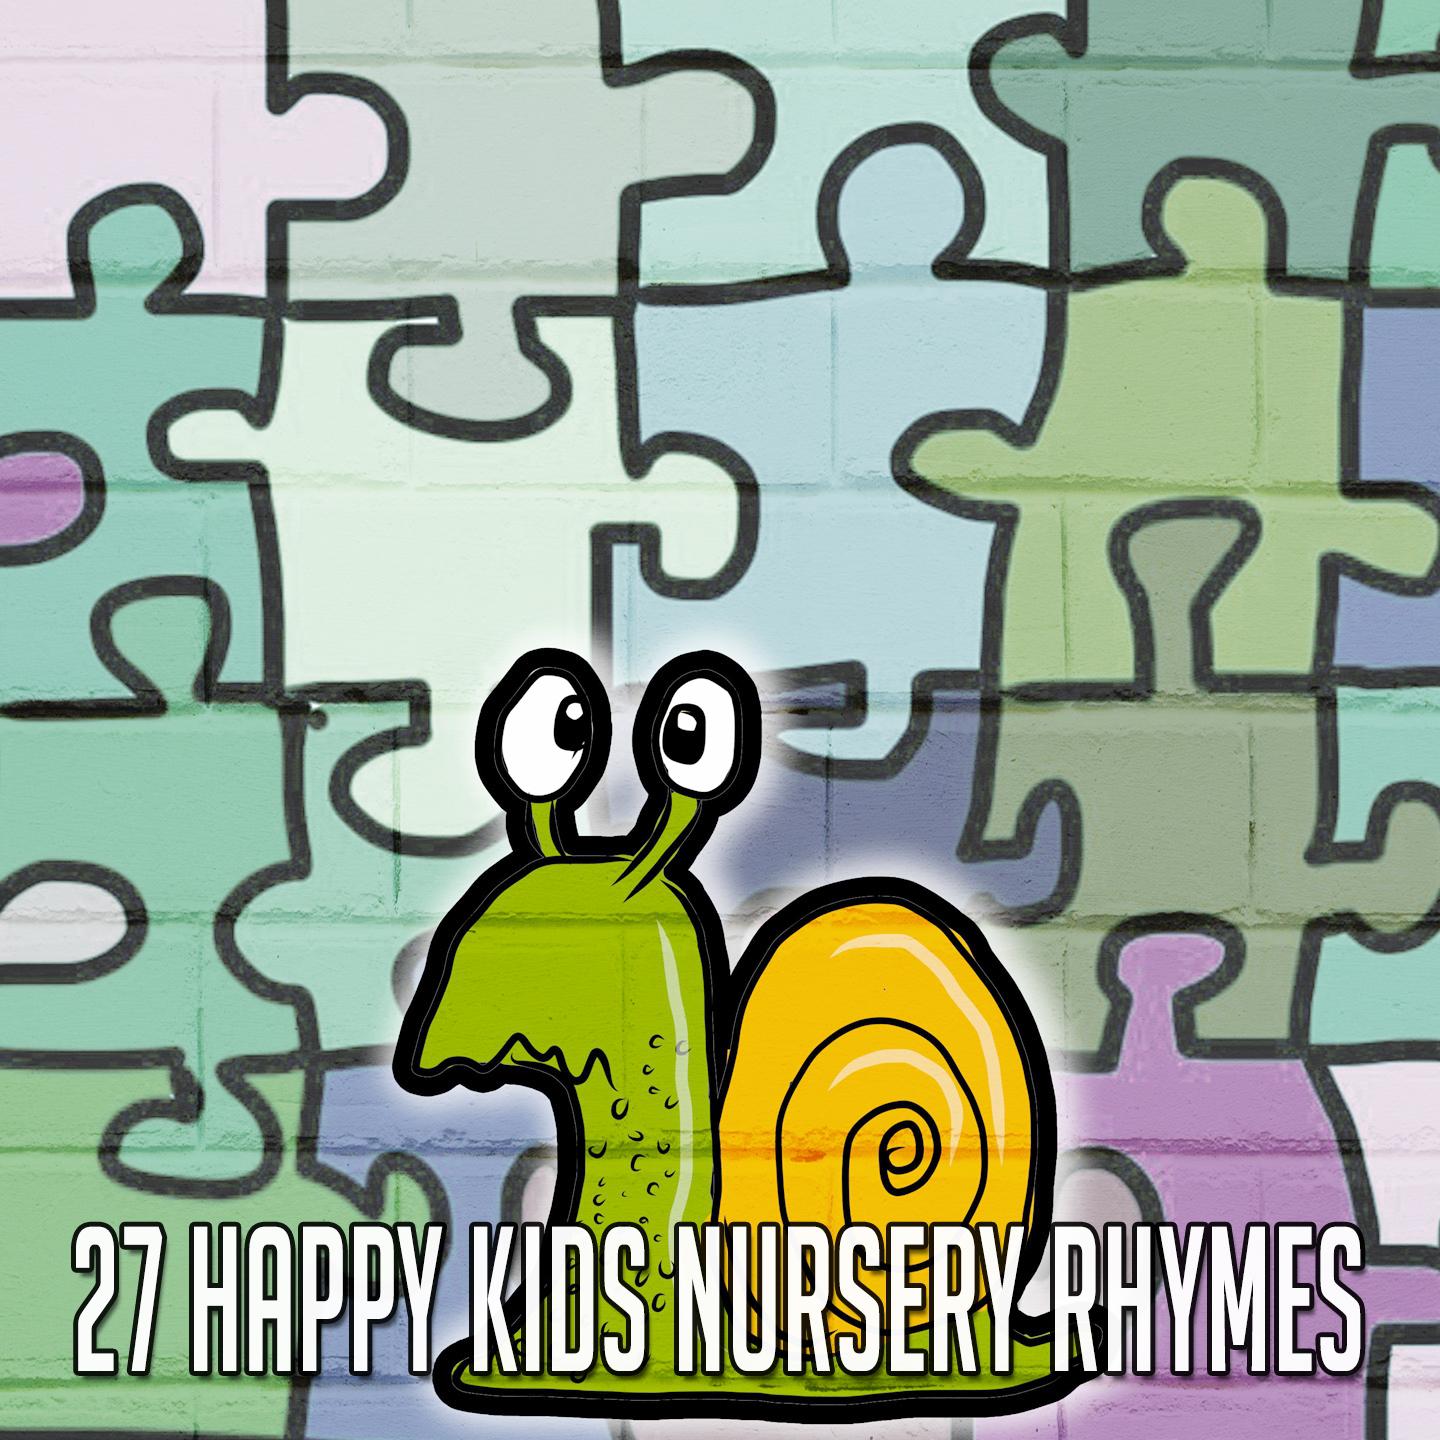 27 Happy Kids Nursery Rhymes